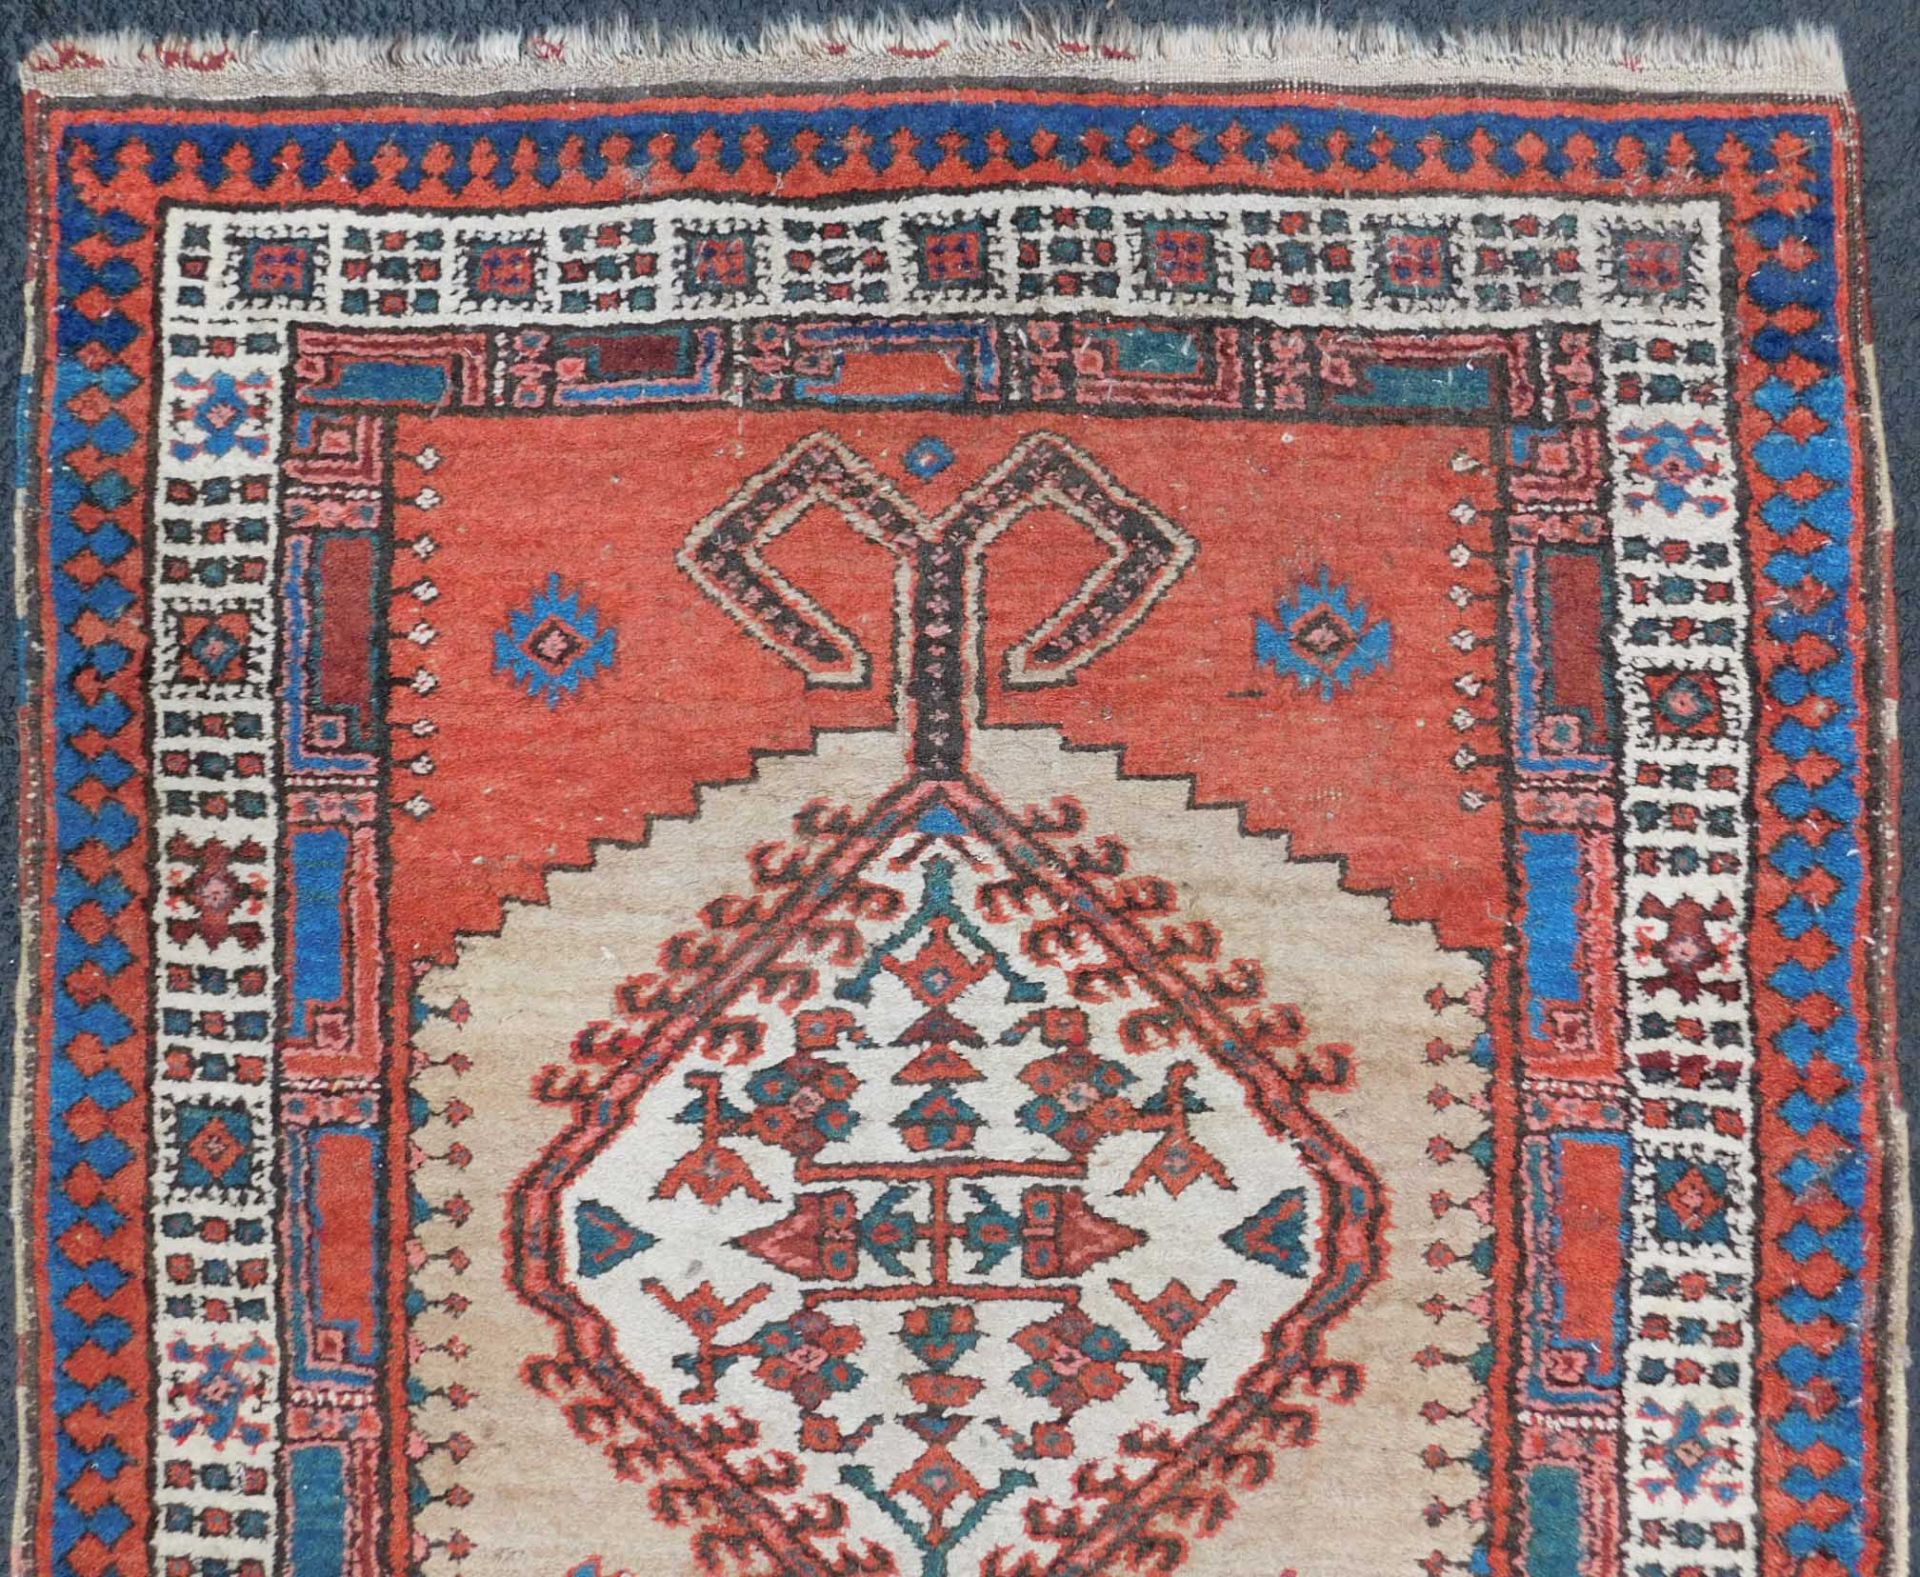 Meshkin Persian carpet. Gallery. Iran. Around 80 - 120 years old. - Bild 5 aus 6